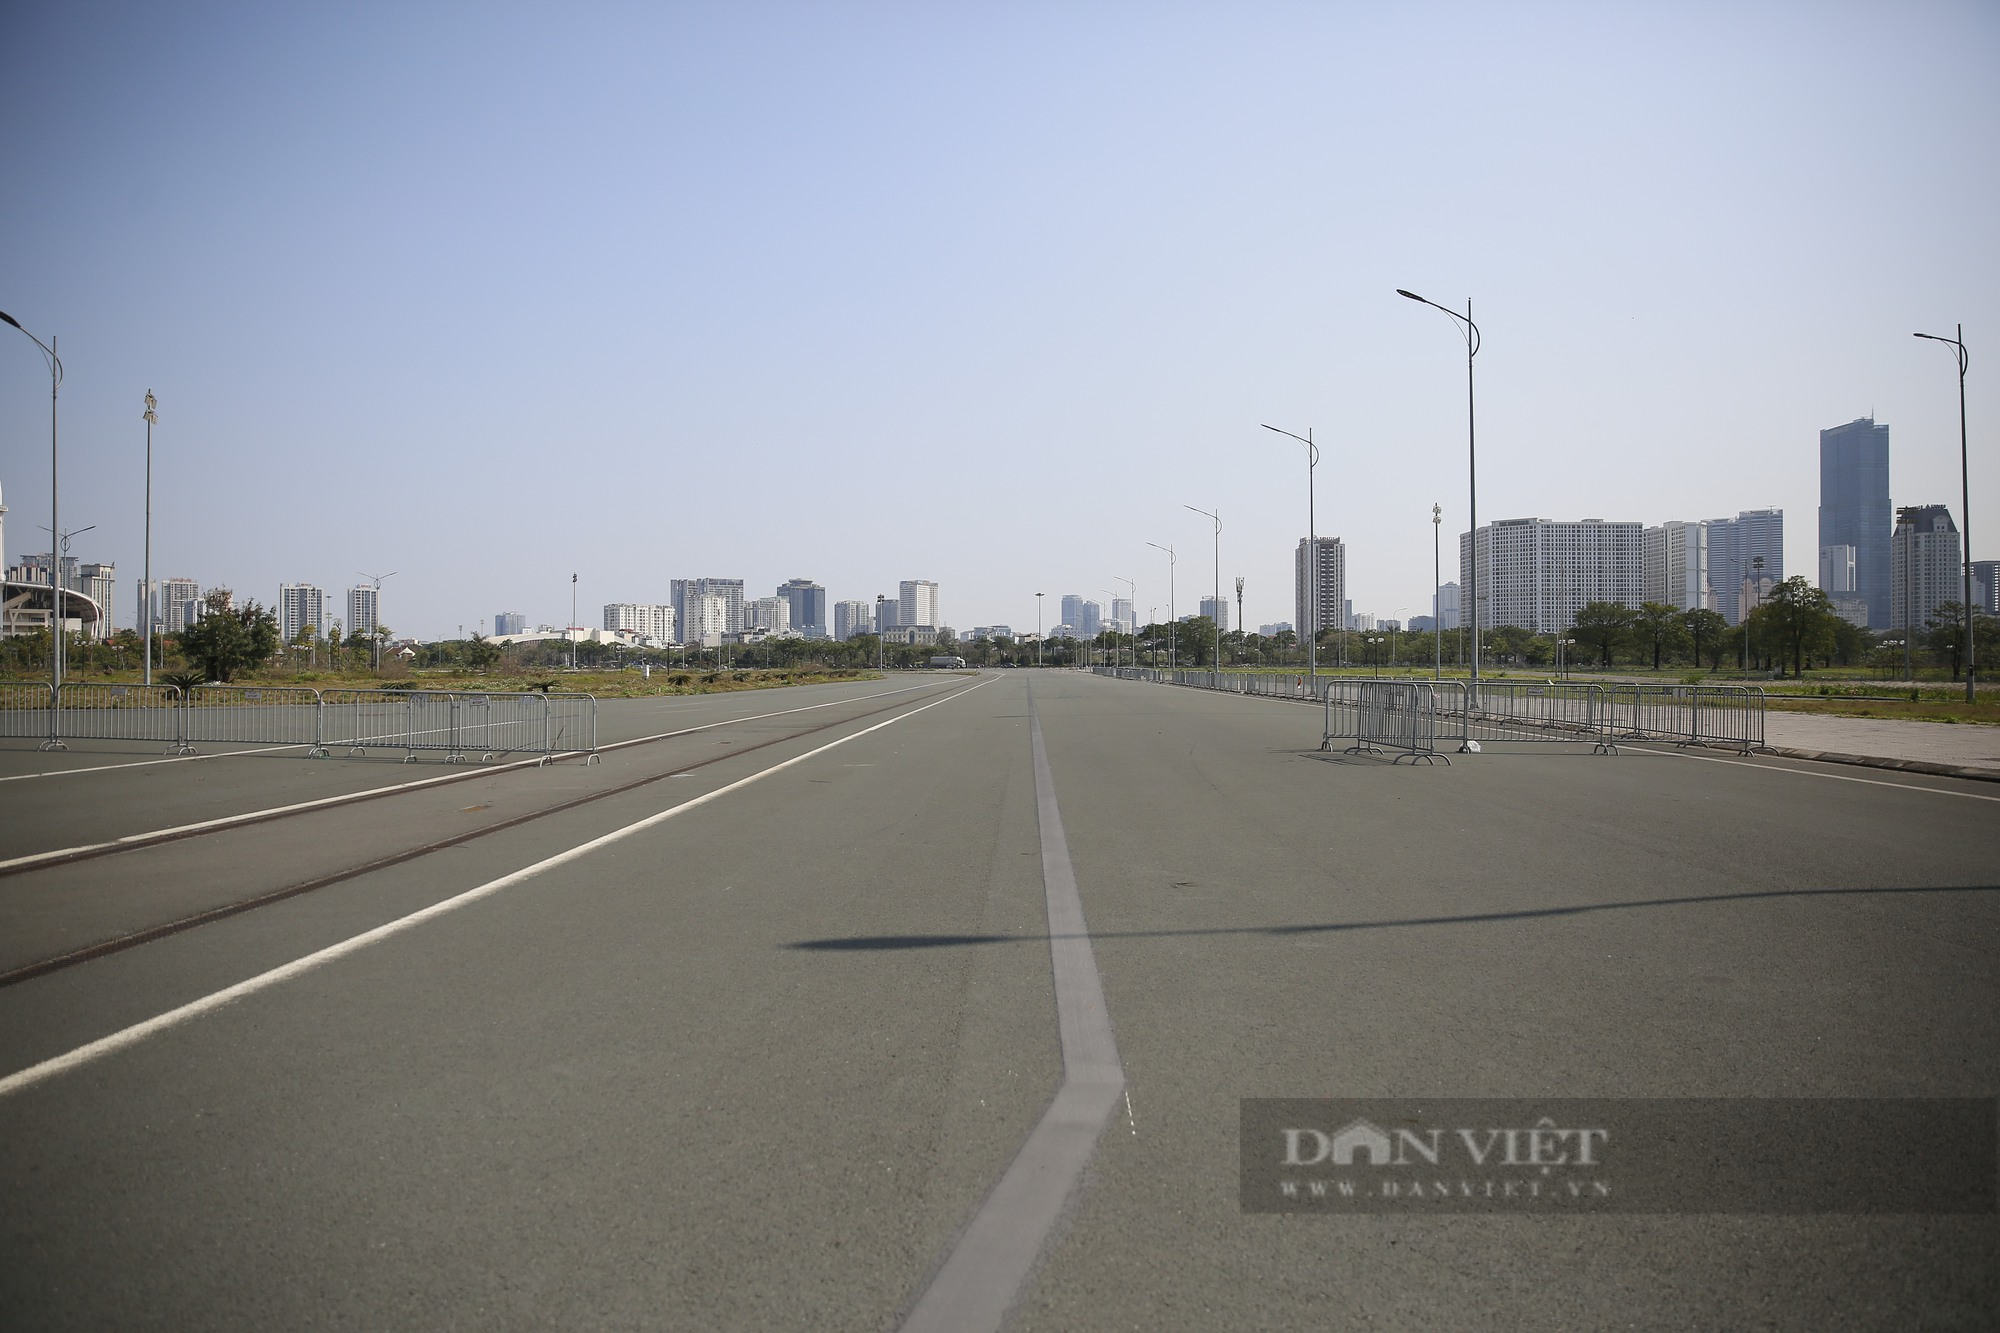 Hiện trạng 300.000 m2 đường đua F1 sau khi Hà Nội chuyển đổi mục đích khai thác, sử dụng - Ảnh 3.